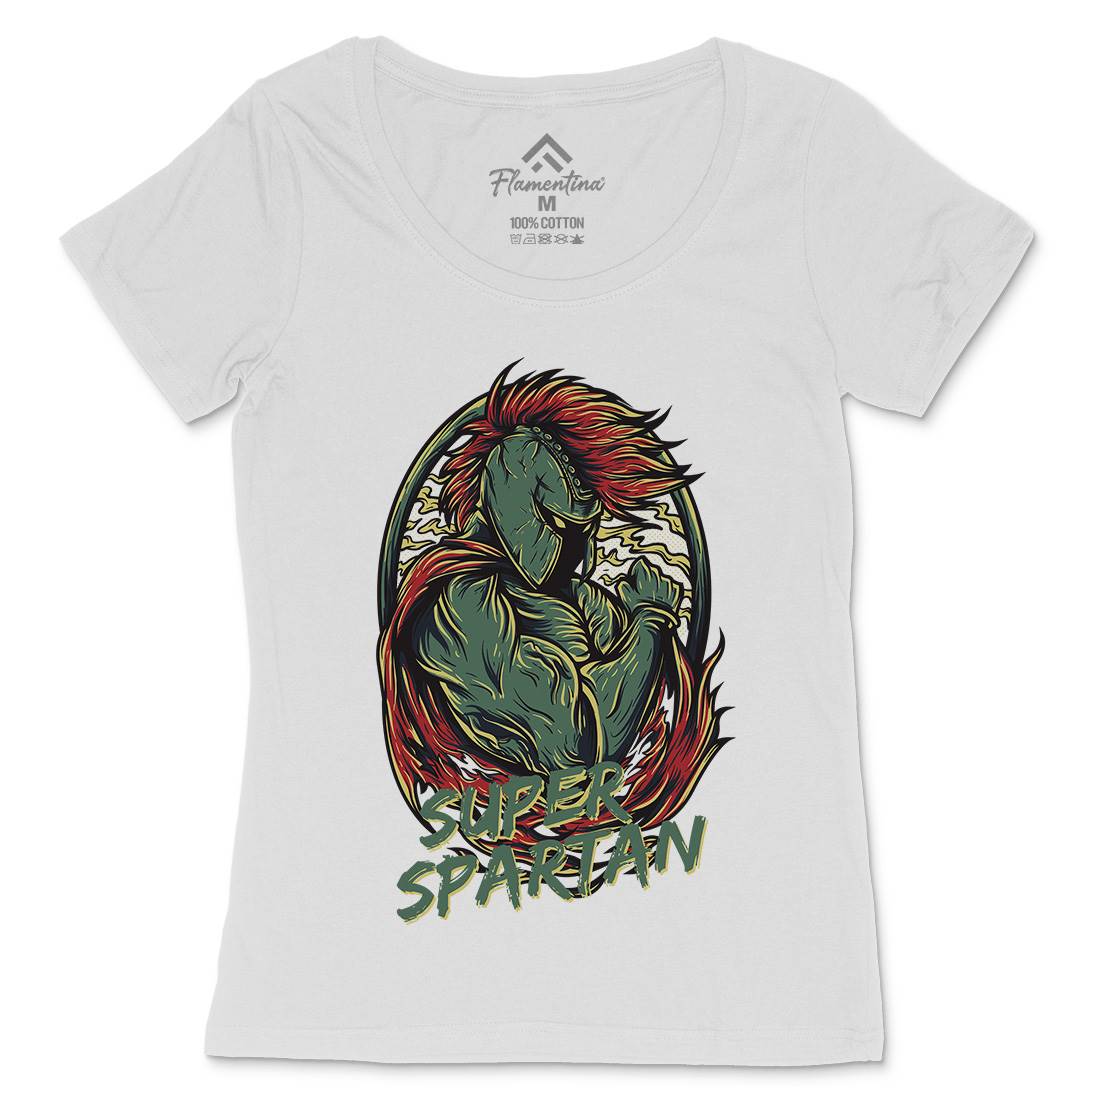 Super Spartan Womens Scoop Neck T-Shirt Warriors D843